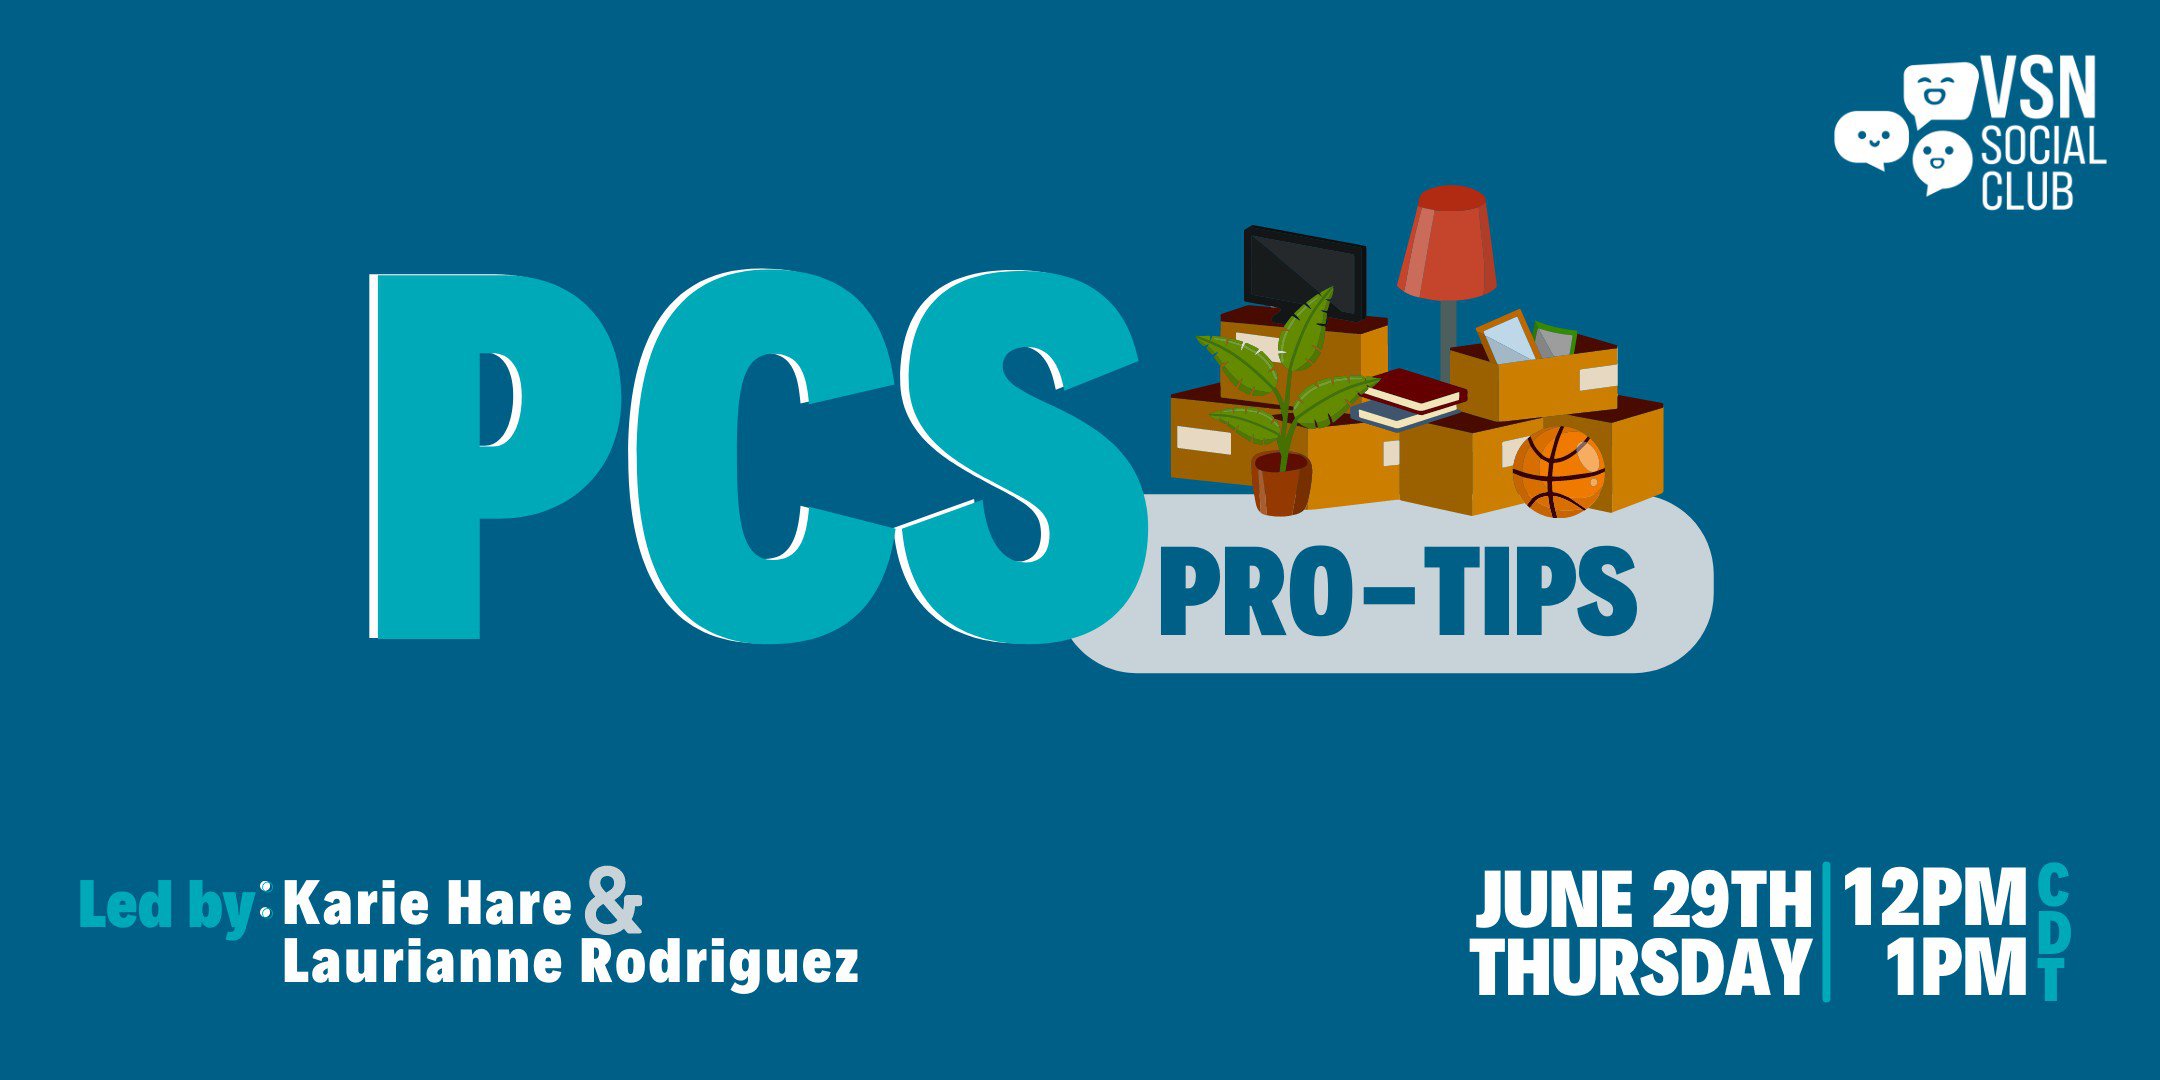 PCS Pro-Tips on June 29th